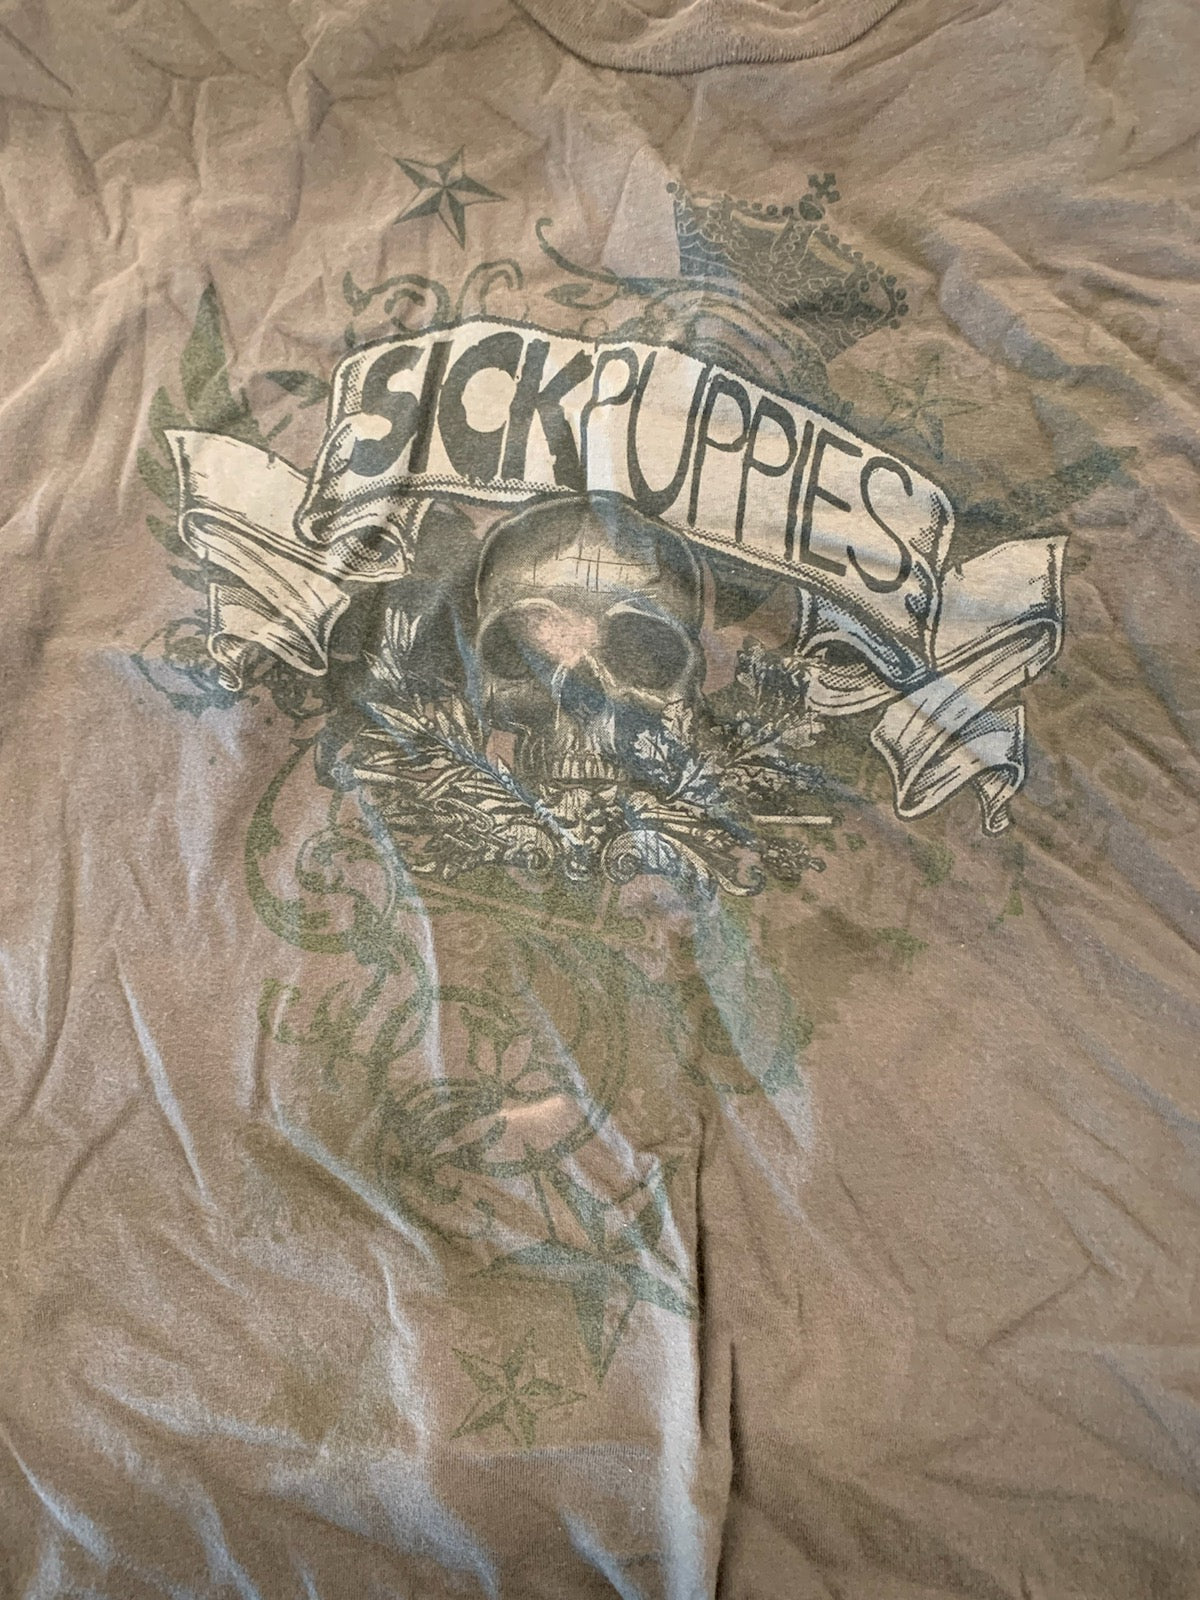 Sick Puppies Skull Banner T-Shirt, Green, XL